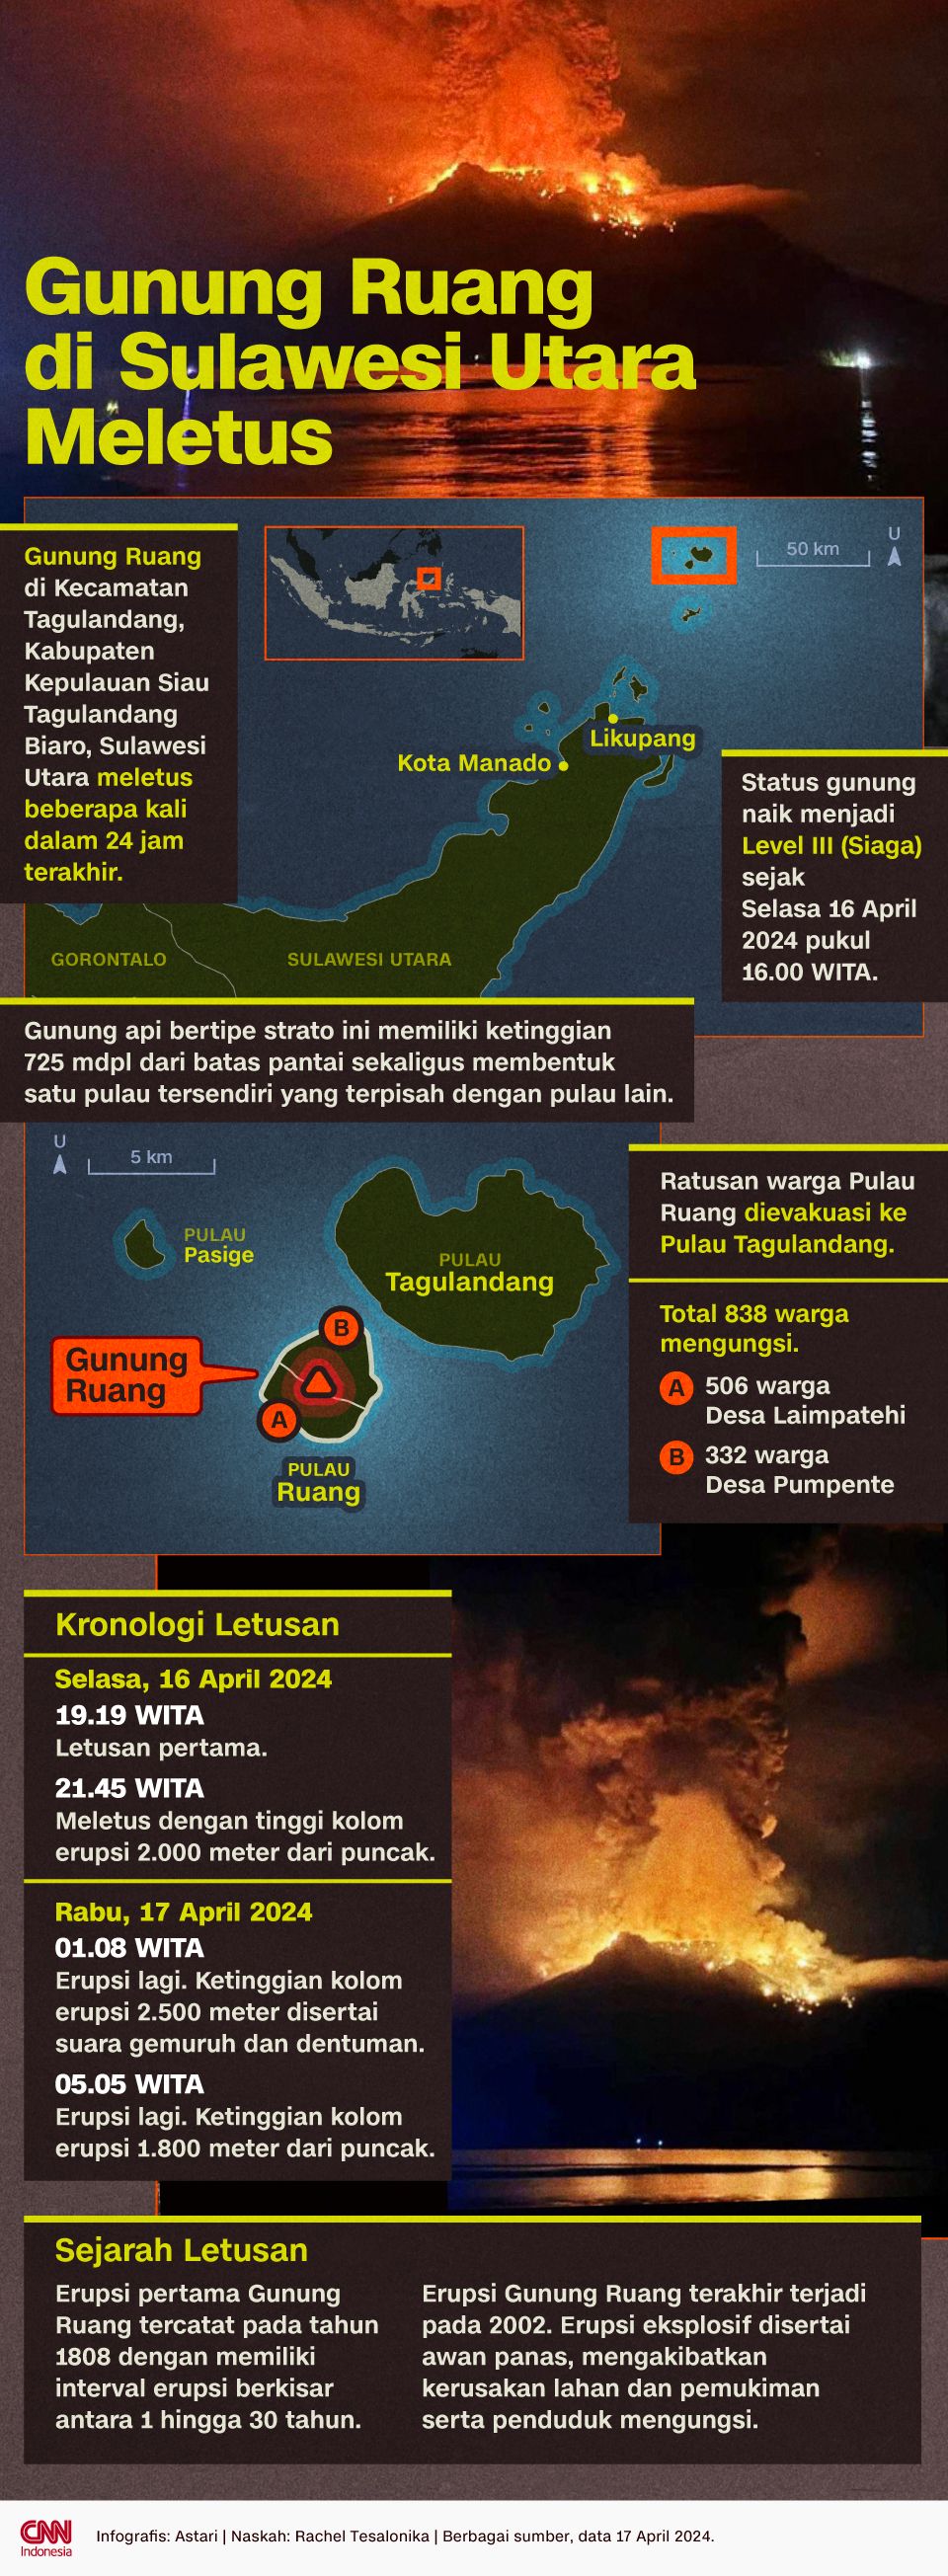 Infografis - Gunung Ruang di Sulawesi Meletus